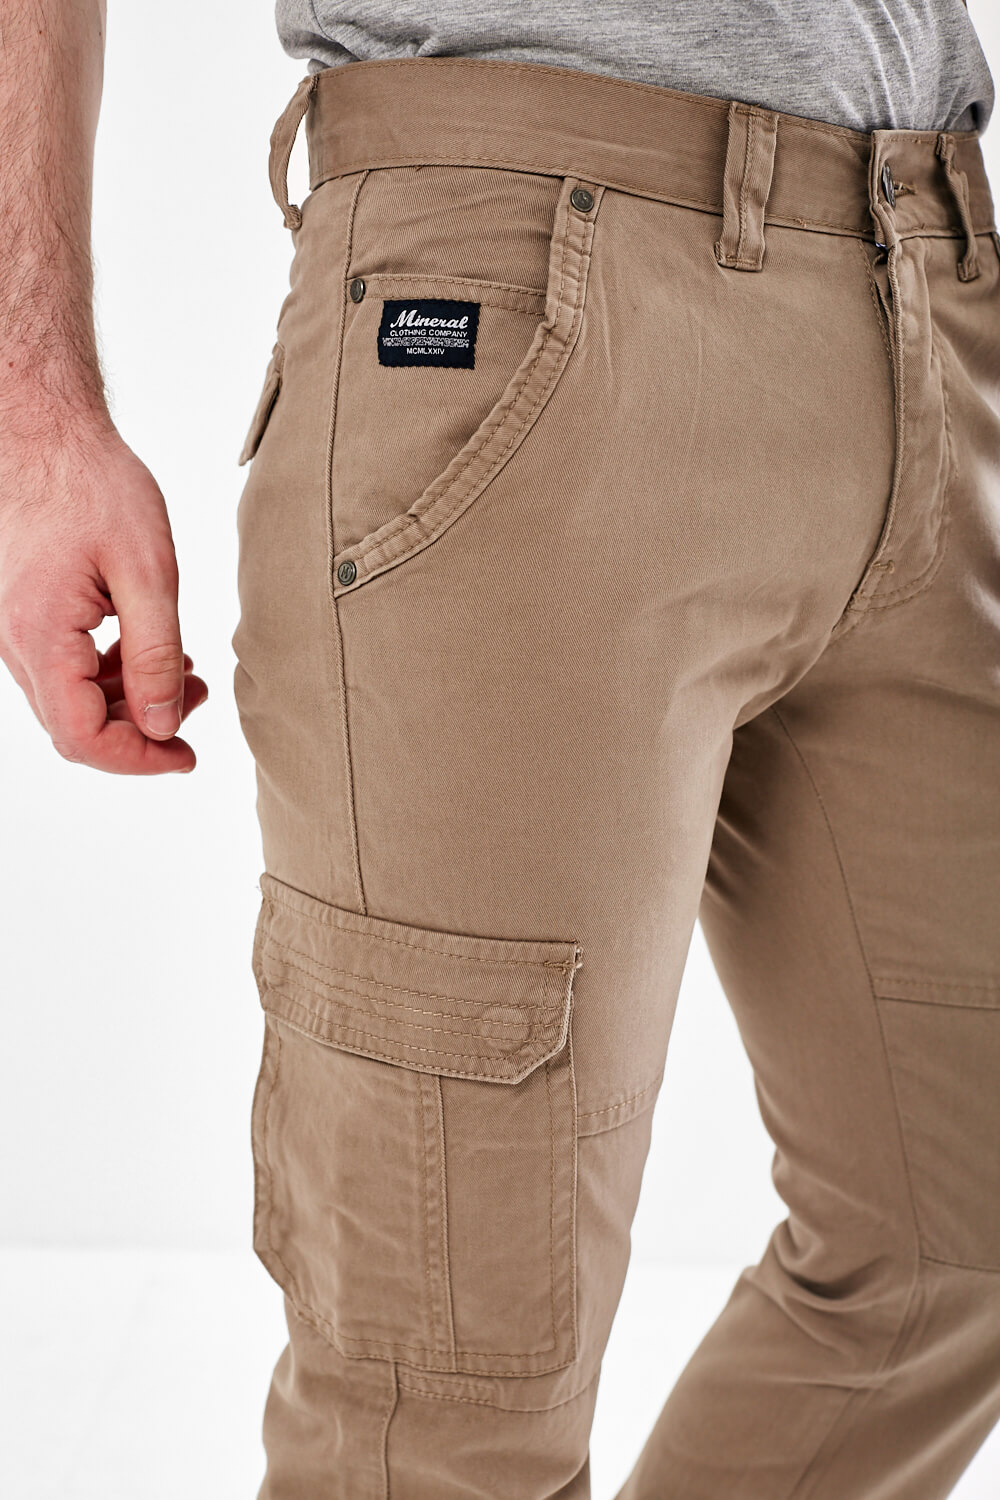 Cargos for Men  Buy Mens Cargo Pants Online at Best Prices in India   Flipkartcom